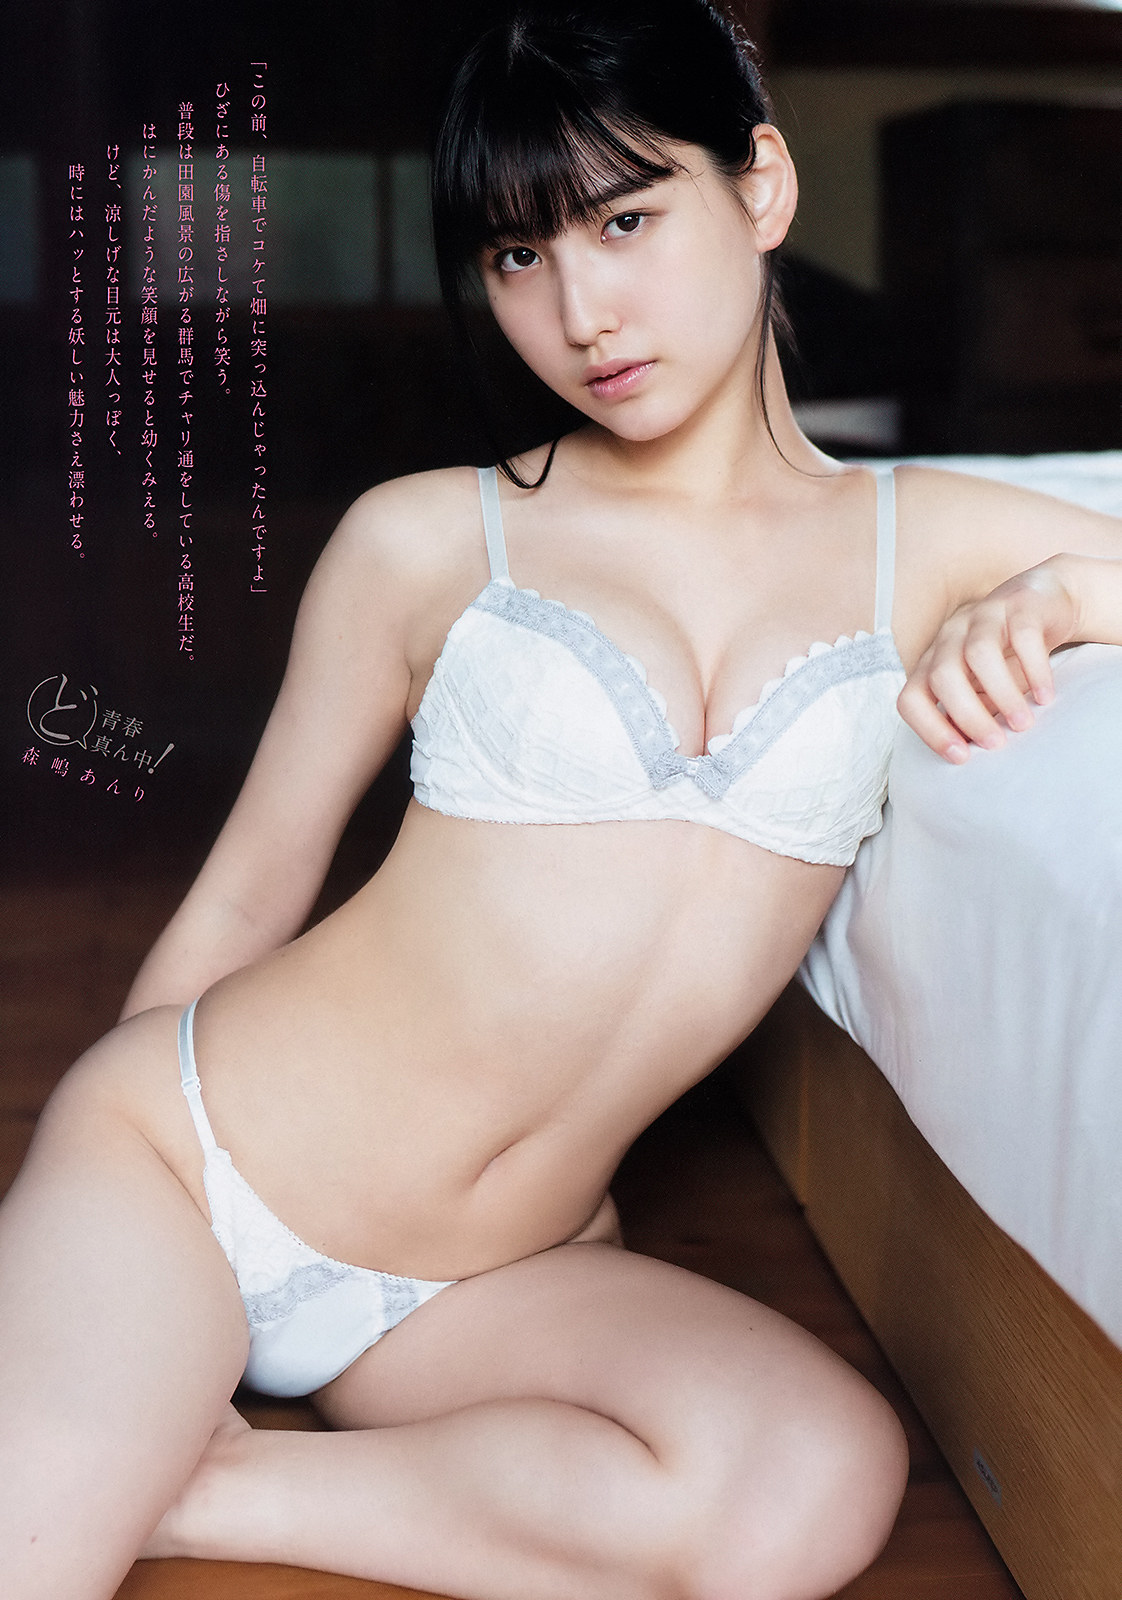 Anri Morishima 森嶋あんり, Young Magazine 2019 No.51 (ヤングマガジン 2019年51号)